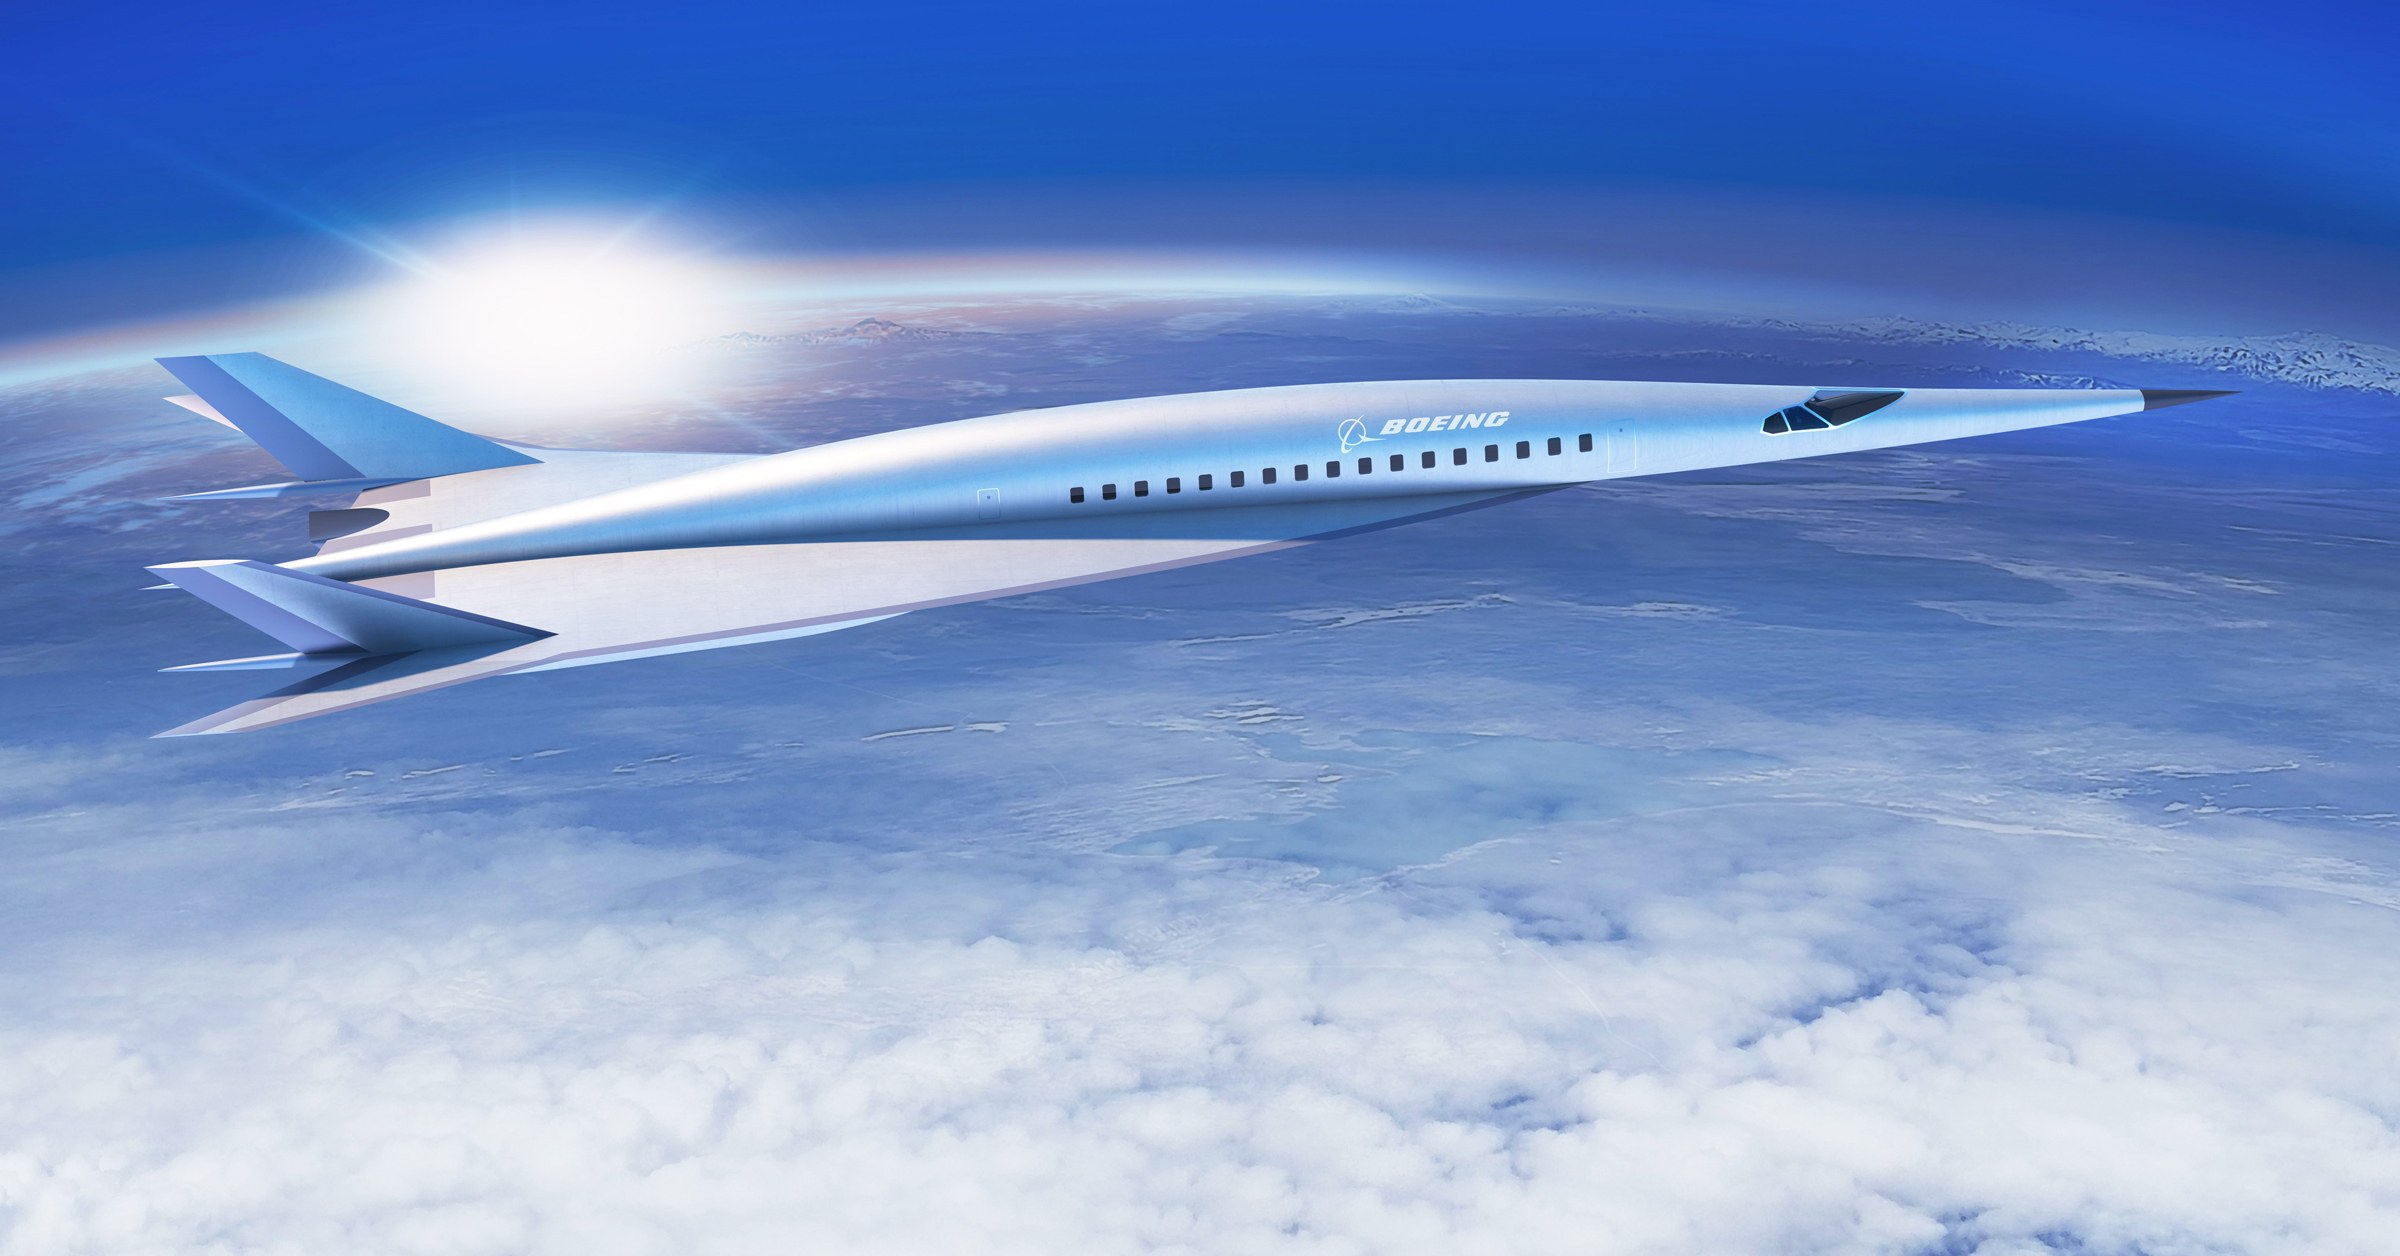 Η Boeing παρουσίασε το σχέδιο  υπερηχητικού αεροσκάφους αερογραμμών: Νέα Υόρκη – Λονδίνο σε 2 ώρες